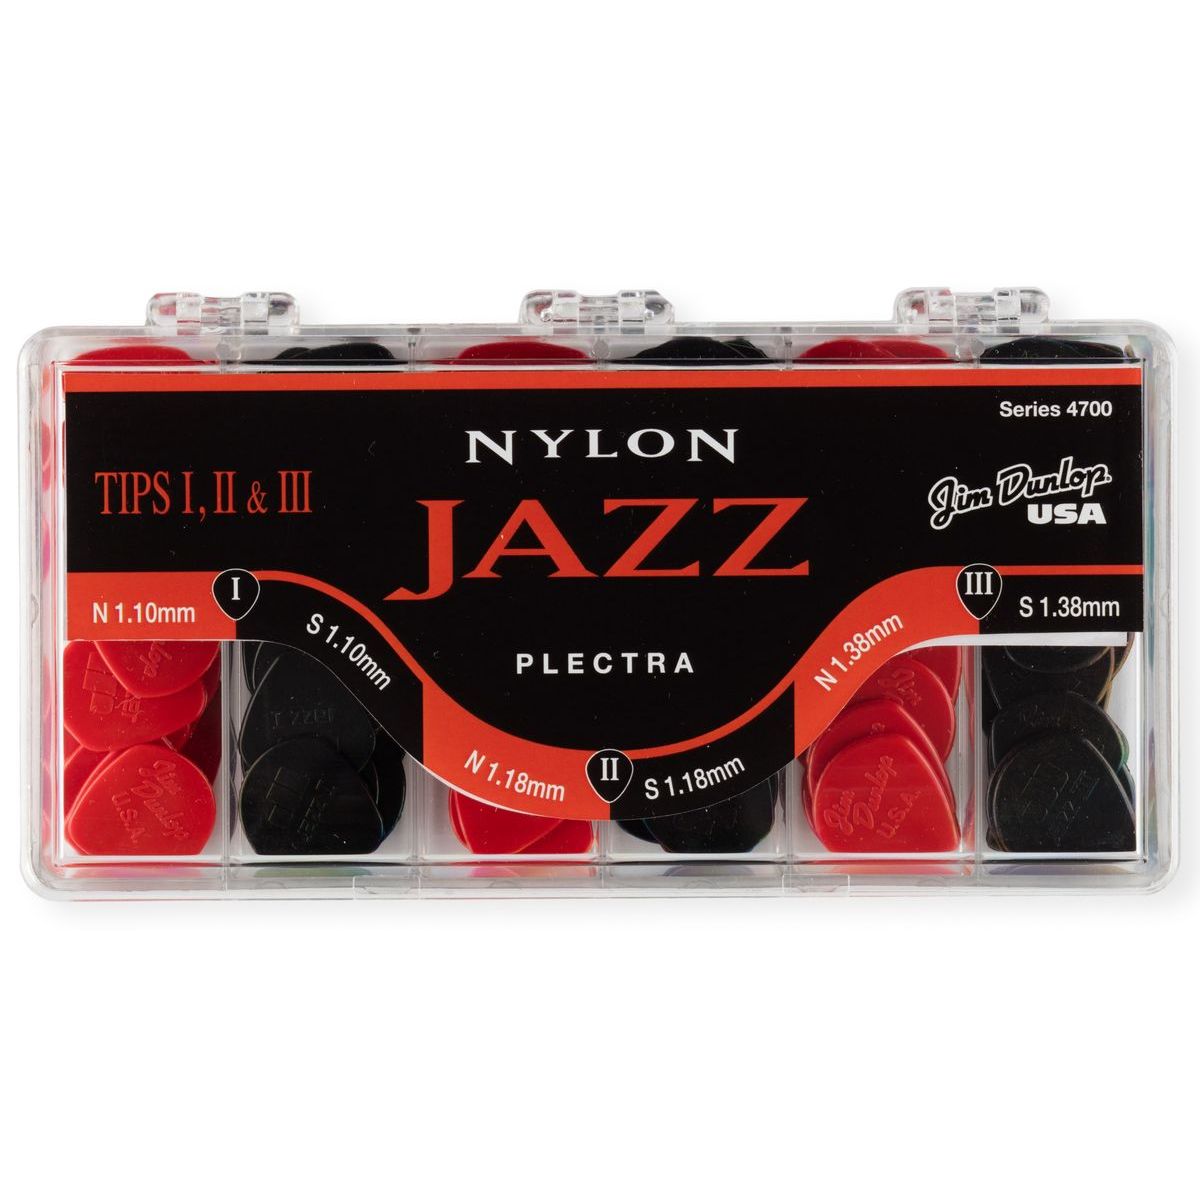 Медиаторы Dunlop 4700 Nylon Jazz Display робин гуд не приглашён пейшнс джон